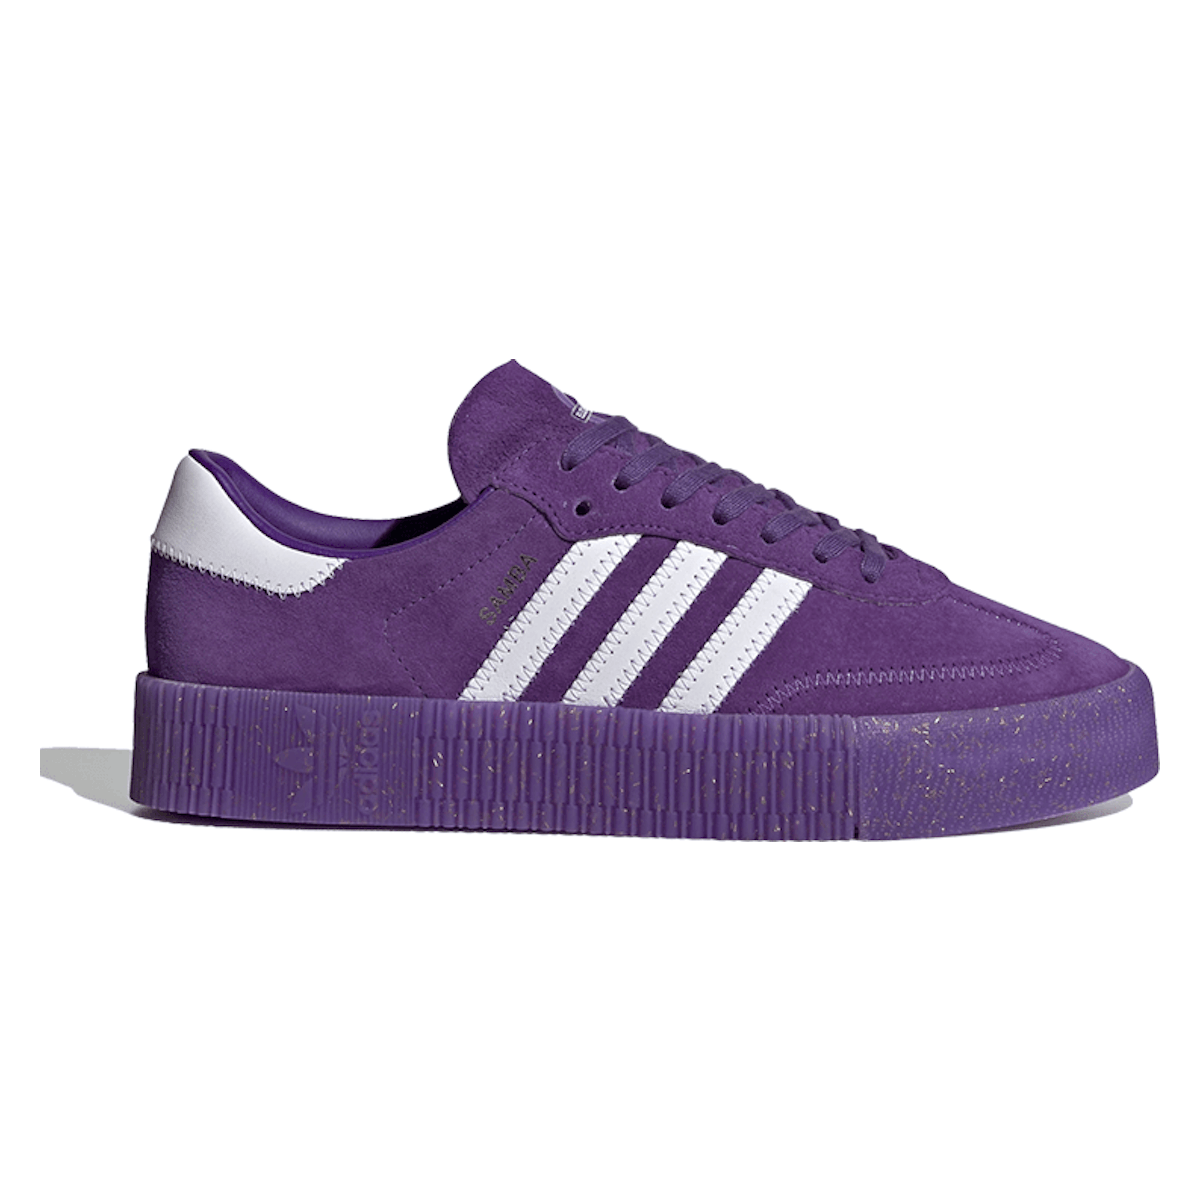 Adidas Sambarose "Collegiate Purple"